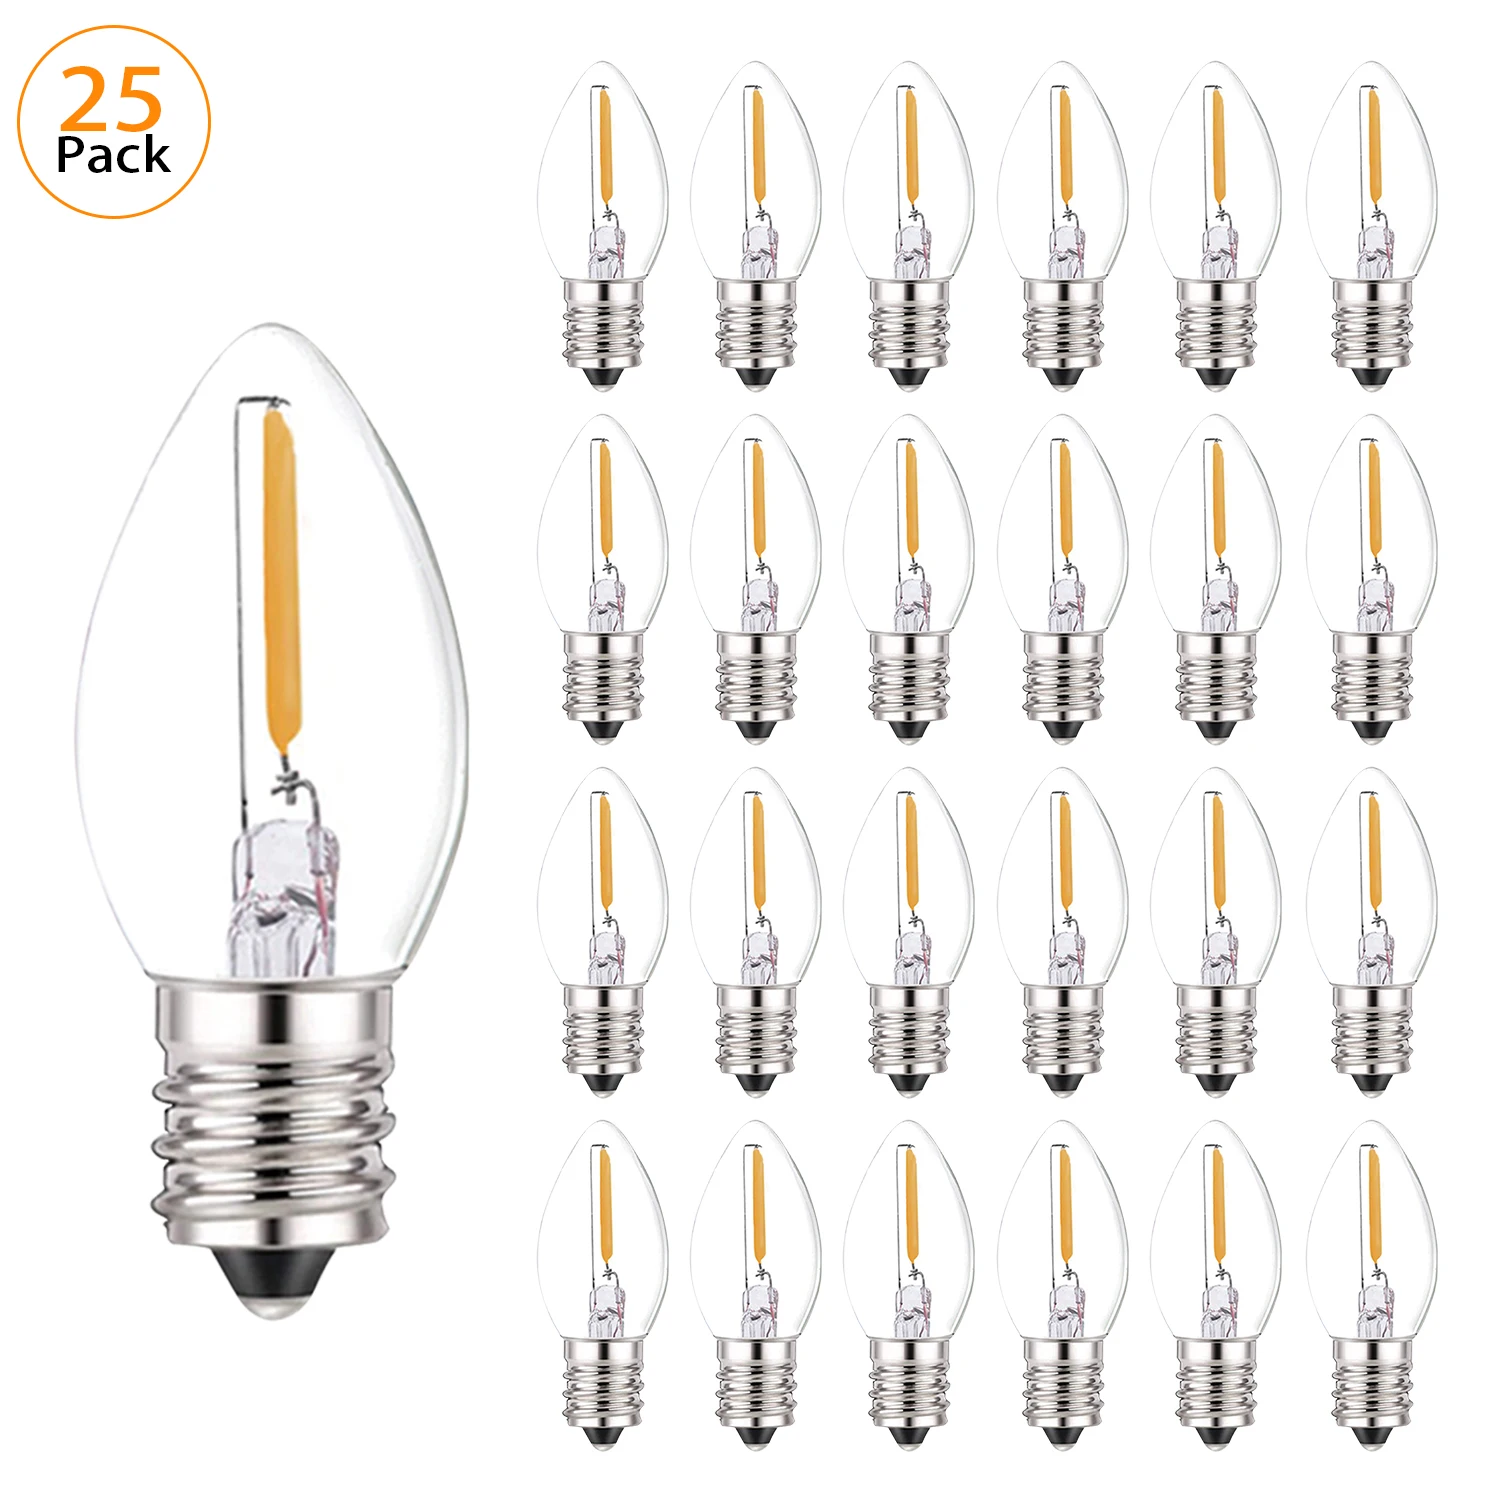 C7 ampoule led, genixgreen 0.5w lumière de bougie ampoules, ambre